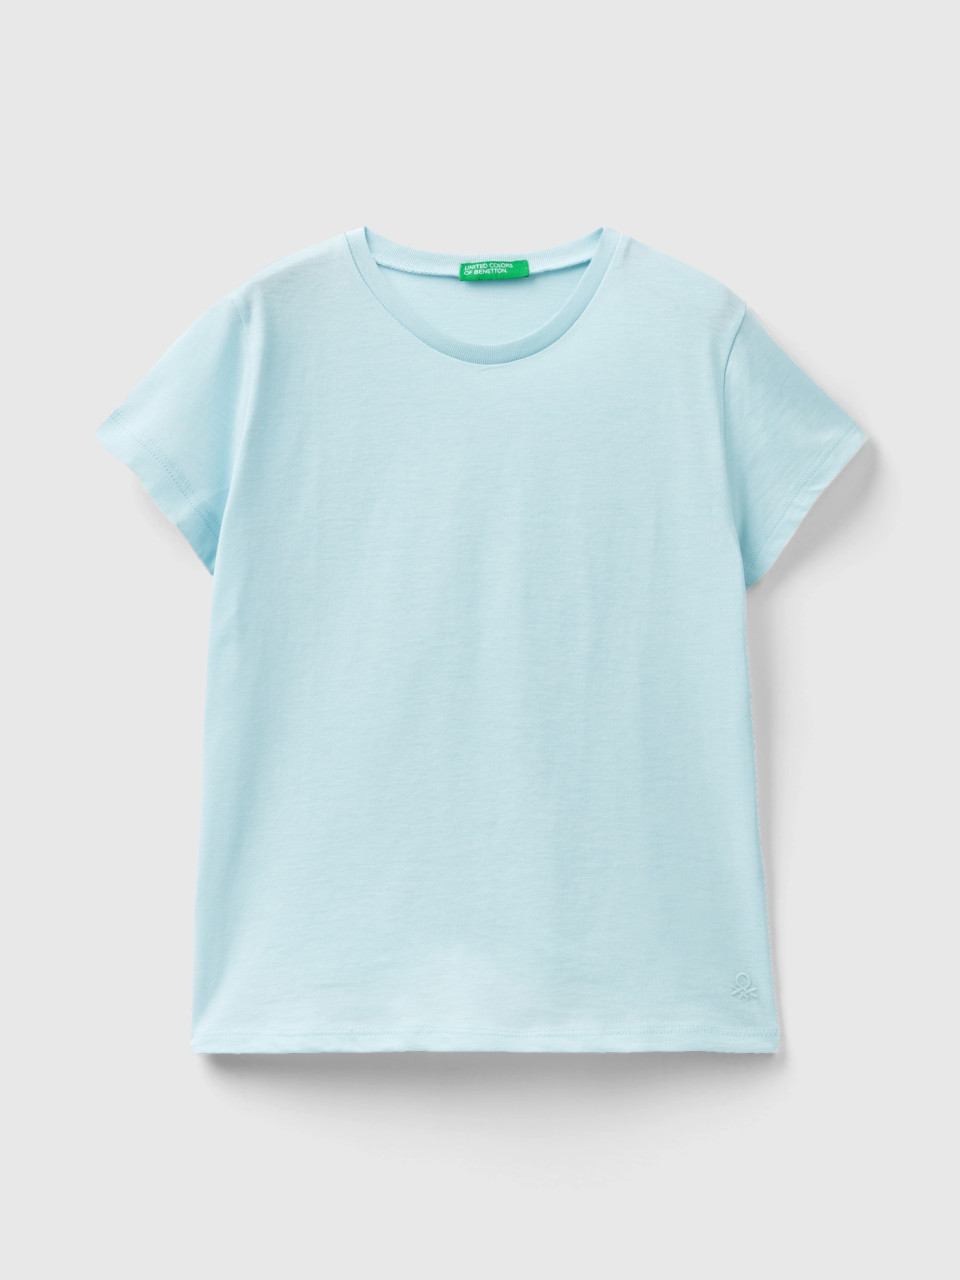 Benetton, T-shirt In Pure Organic Cotton, Aqua, Kids